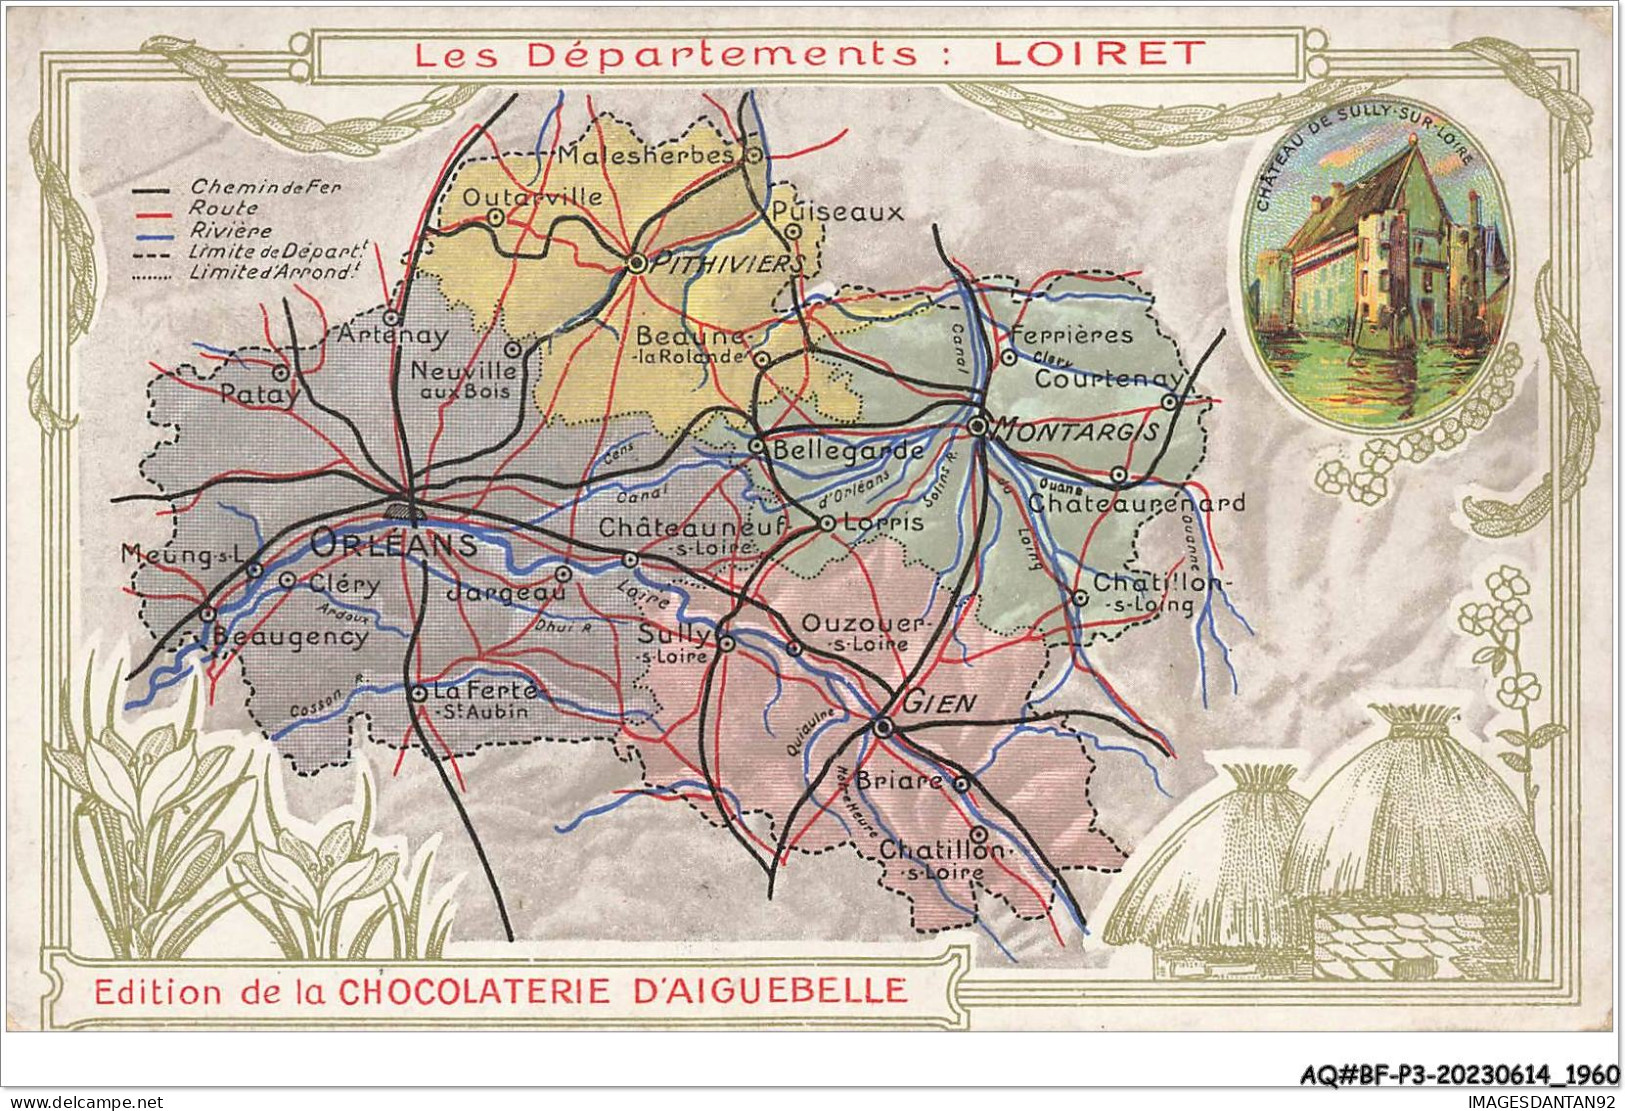 AQ#BFP3-CHROMOS-0978 - CHOCOLAT D'AIGUEBELLE - Les Départements - Loiret - Aiguebelle